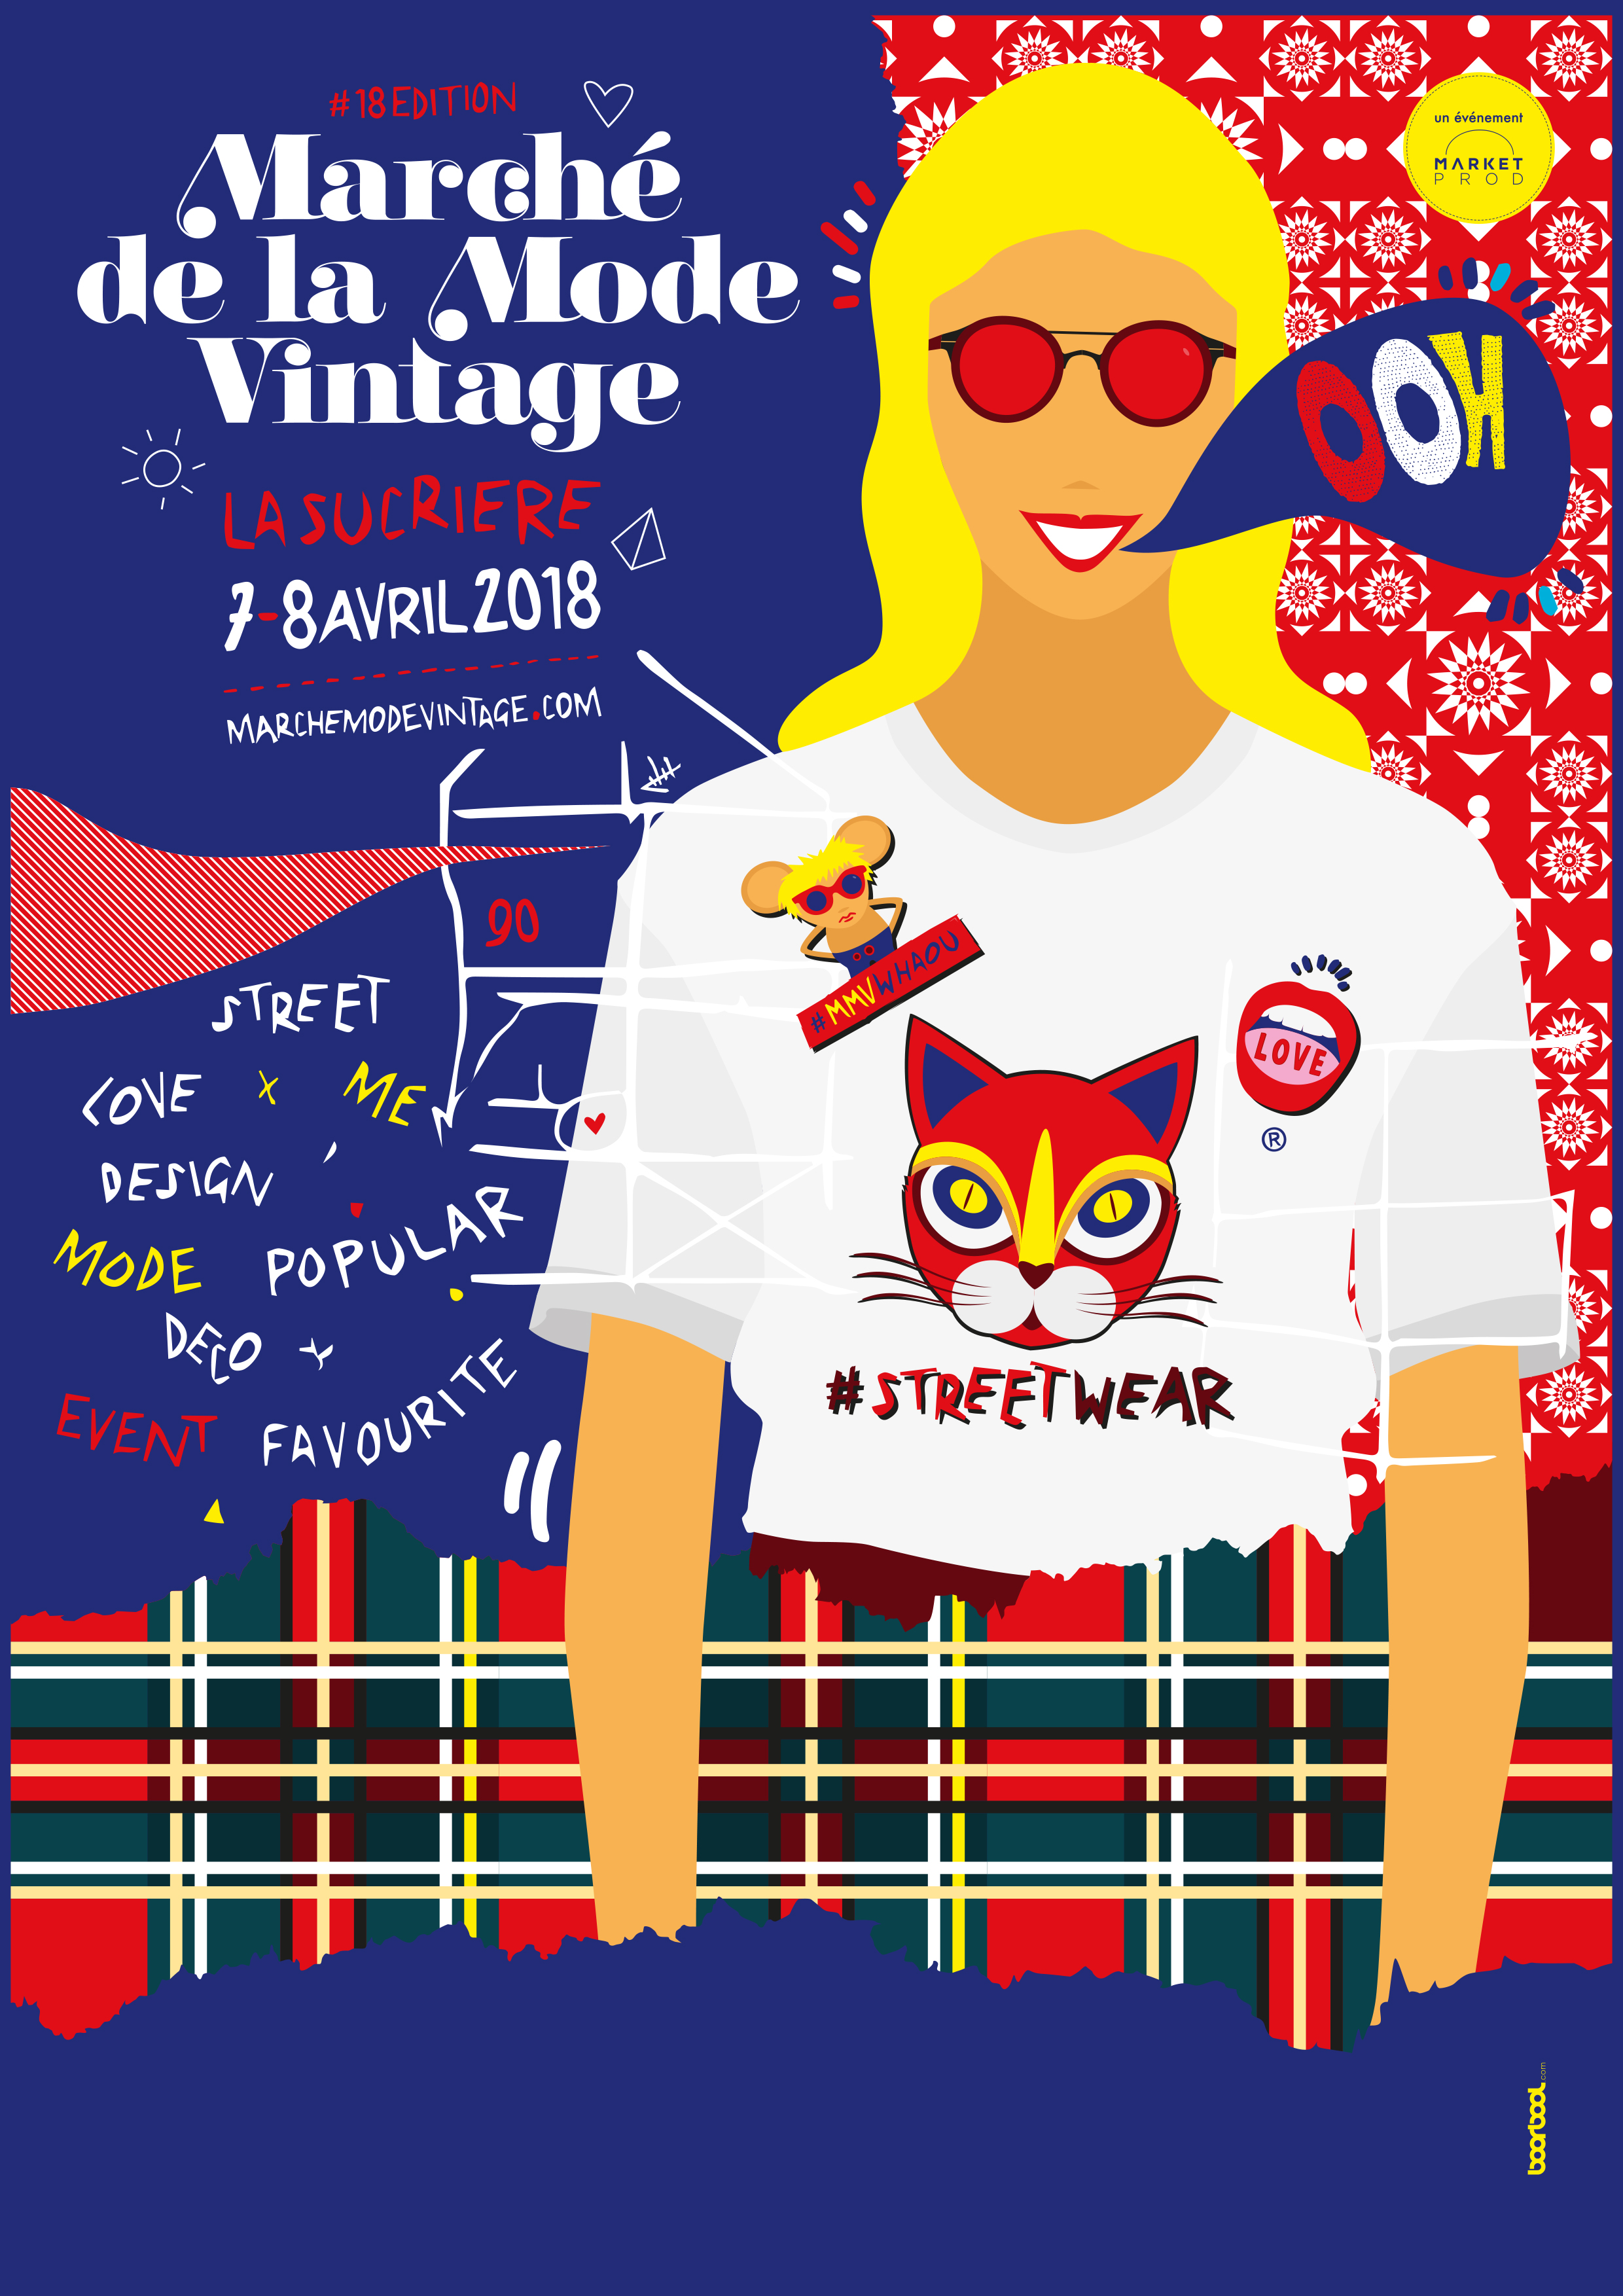 Marché de la mode vintage Lyon 2018